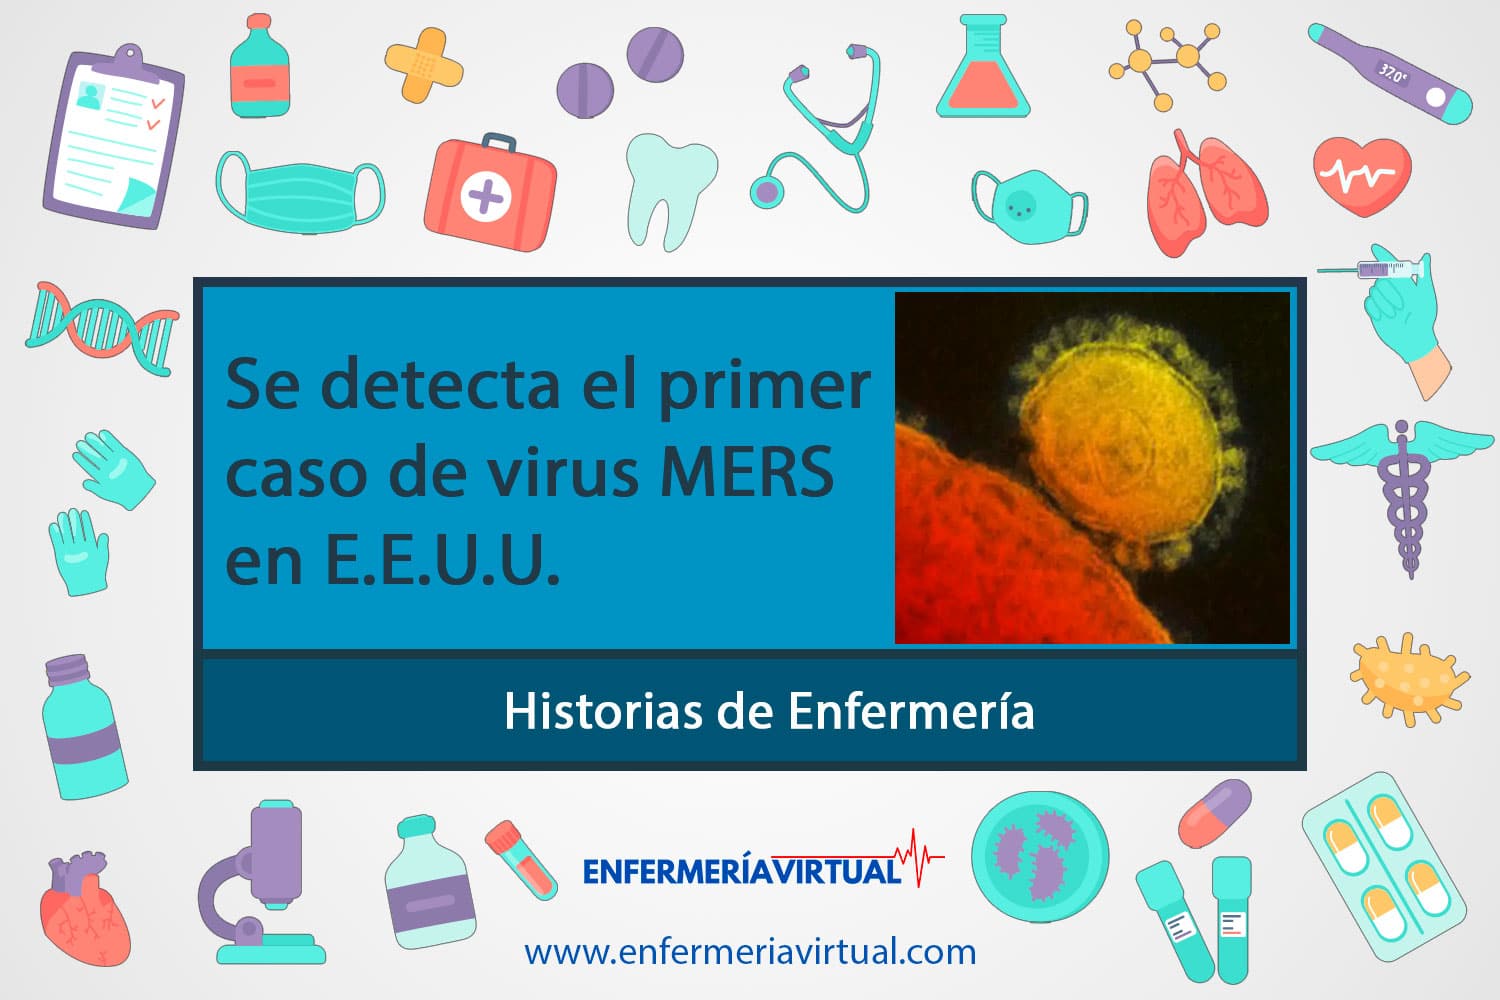 Se detecta el primer caso de virus MERS en E.E.U.U.